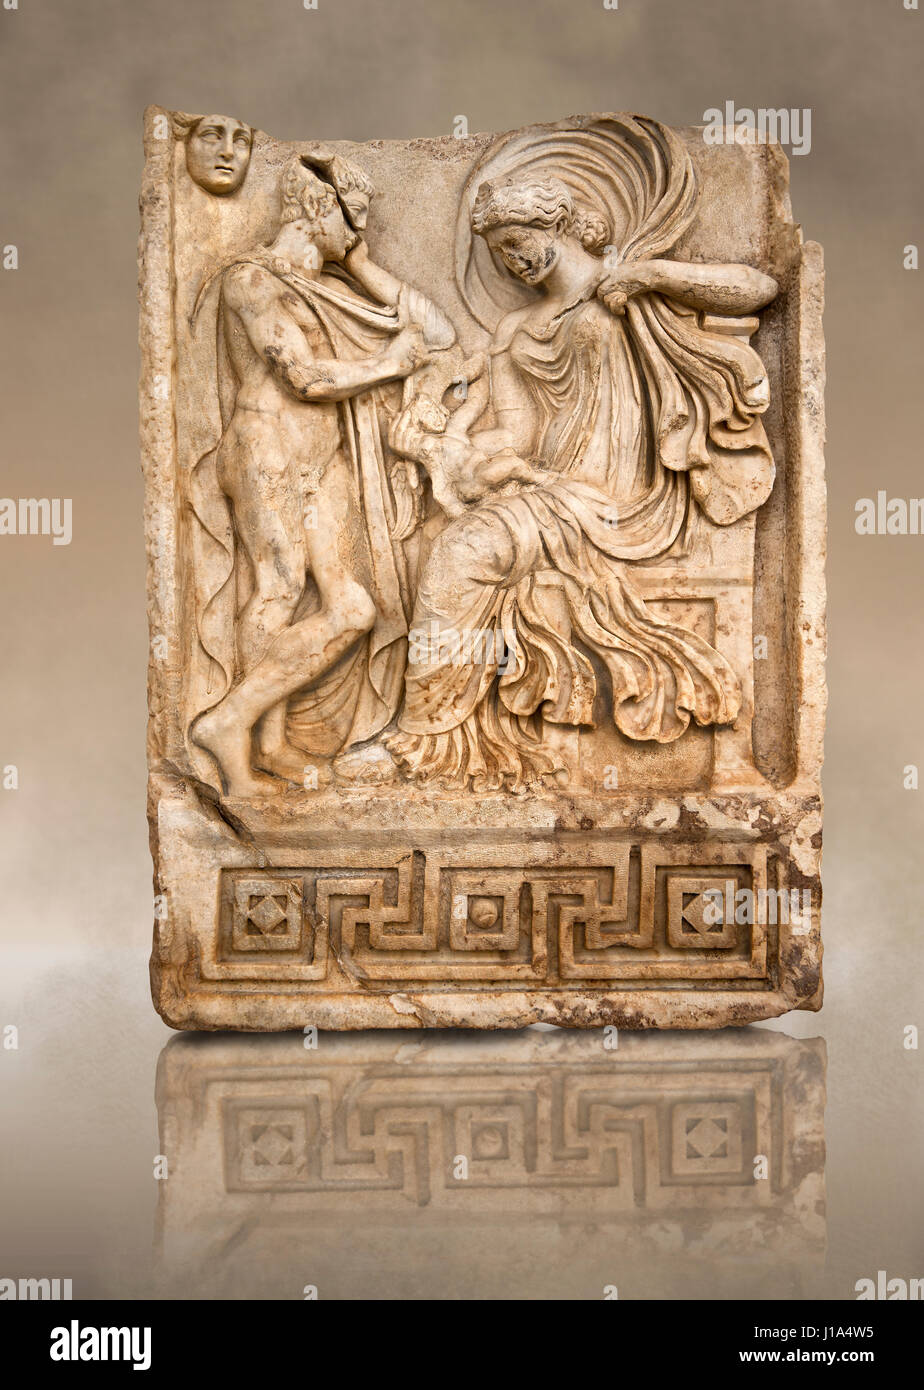 Roman temple releif freize sculpture of Aphrodite & Anchises, Aphrodisias Museum, Aphrodisias, Turkey The trojan shepherd Anchises gazes at a seated A Stock Photo